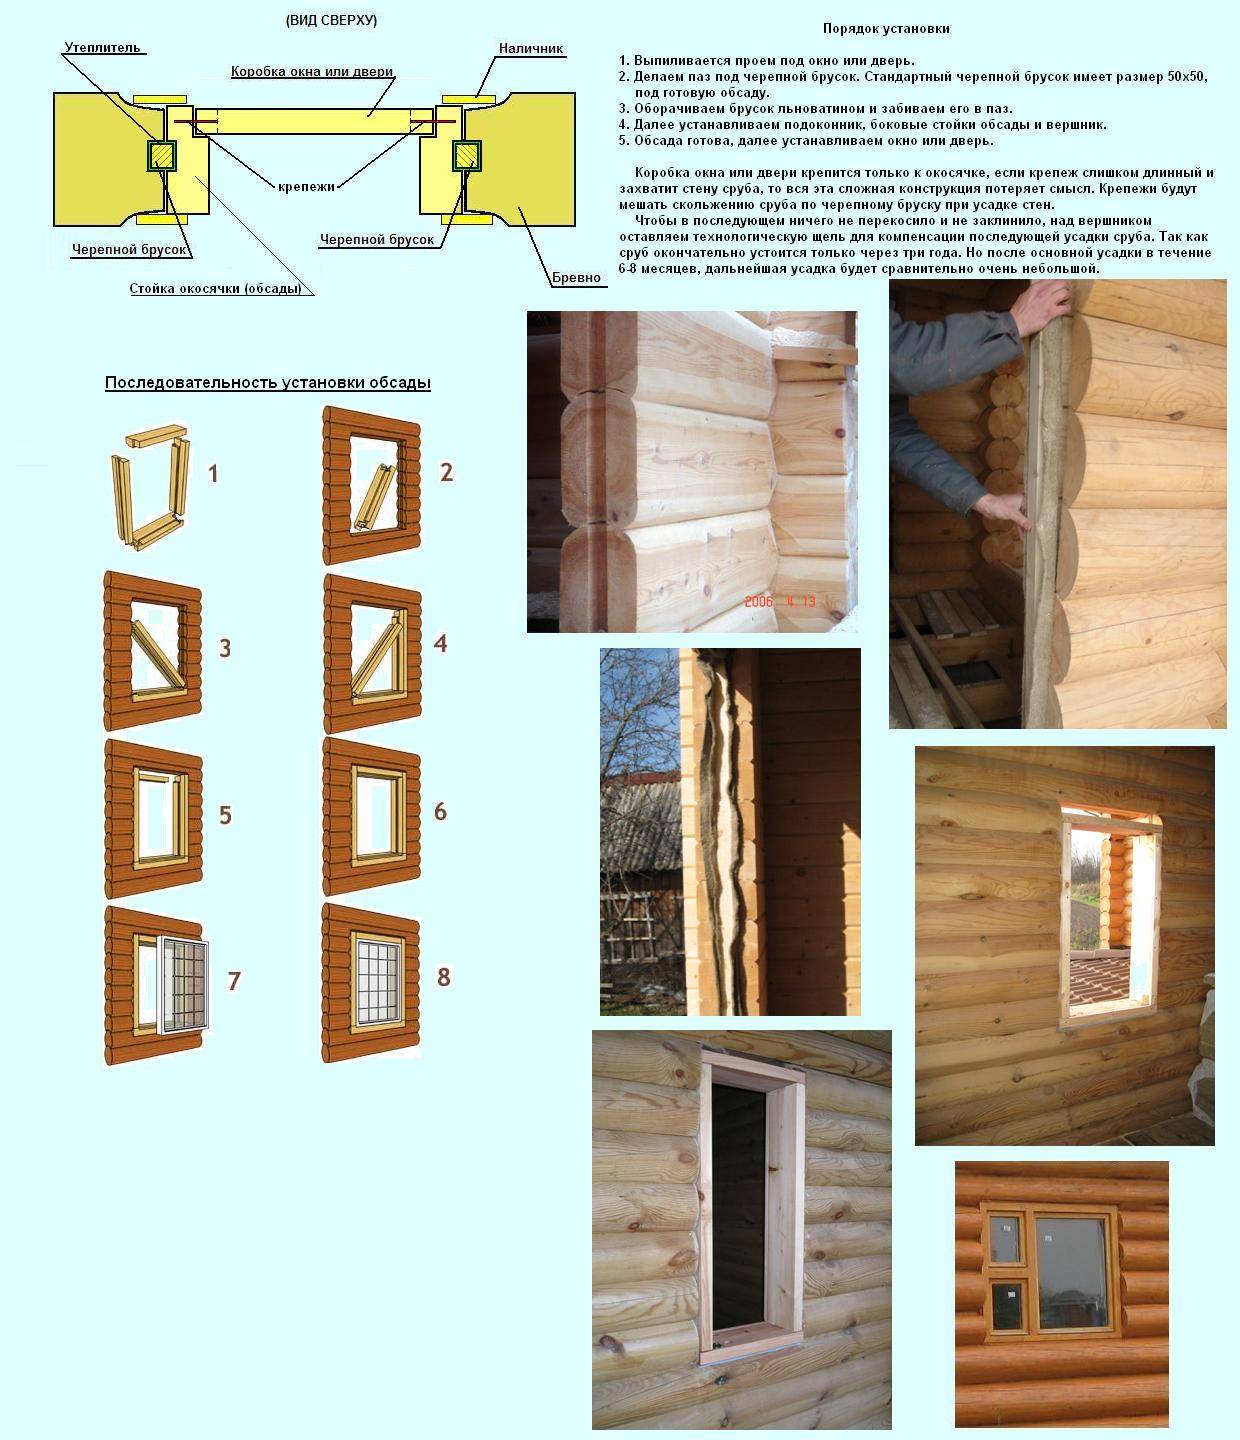 Как установить входную дверь в баню - этапы установки в баню из сруба и кирпича